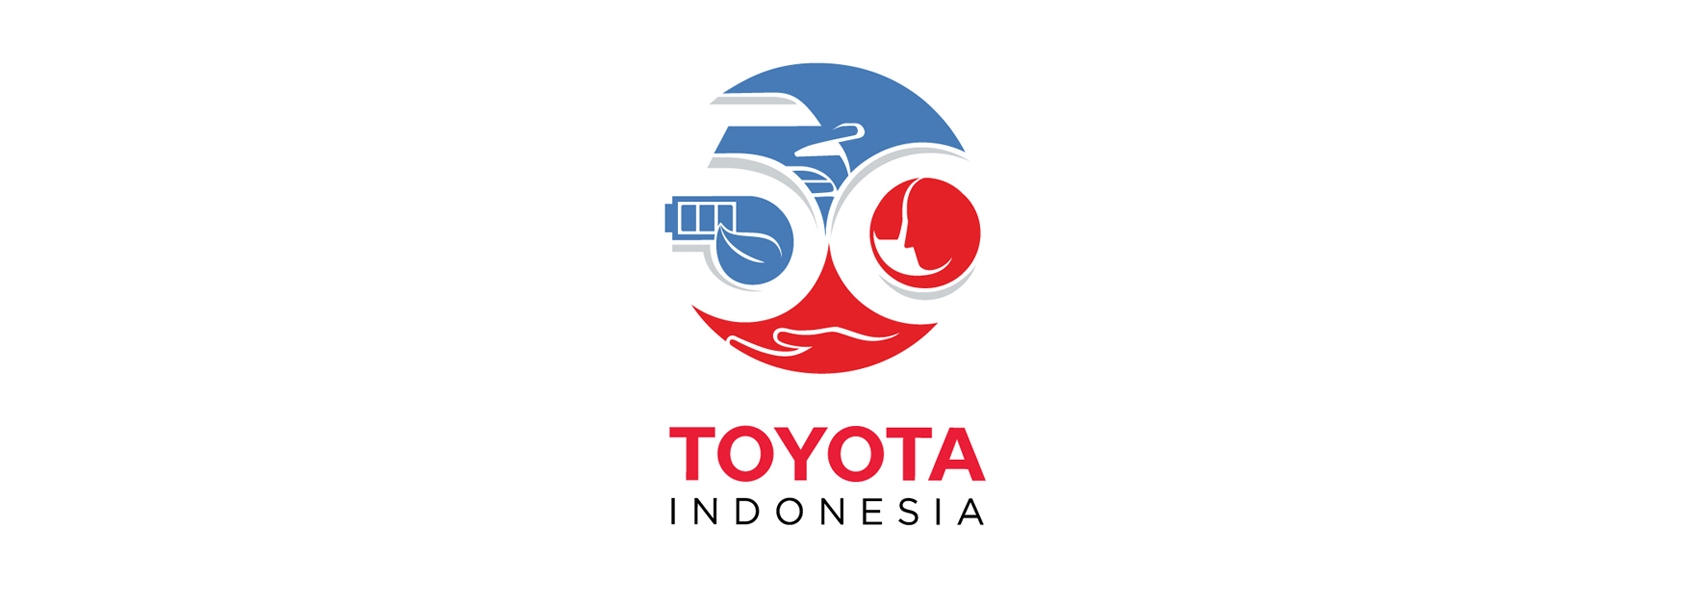 50 Tahun Toyota di Indonesia: Berkomitmen Untuk Hadirkan Mobility Happiness for All, Toyota Tandai Perjalanan 50 Tahun Di Indonesia Dengan Berikan Total Mobility Solution Sebagai Apresiasi Kepada Masyarakat Indonesia